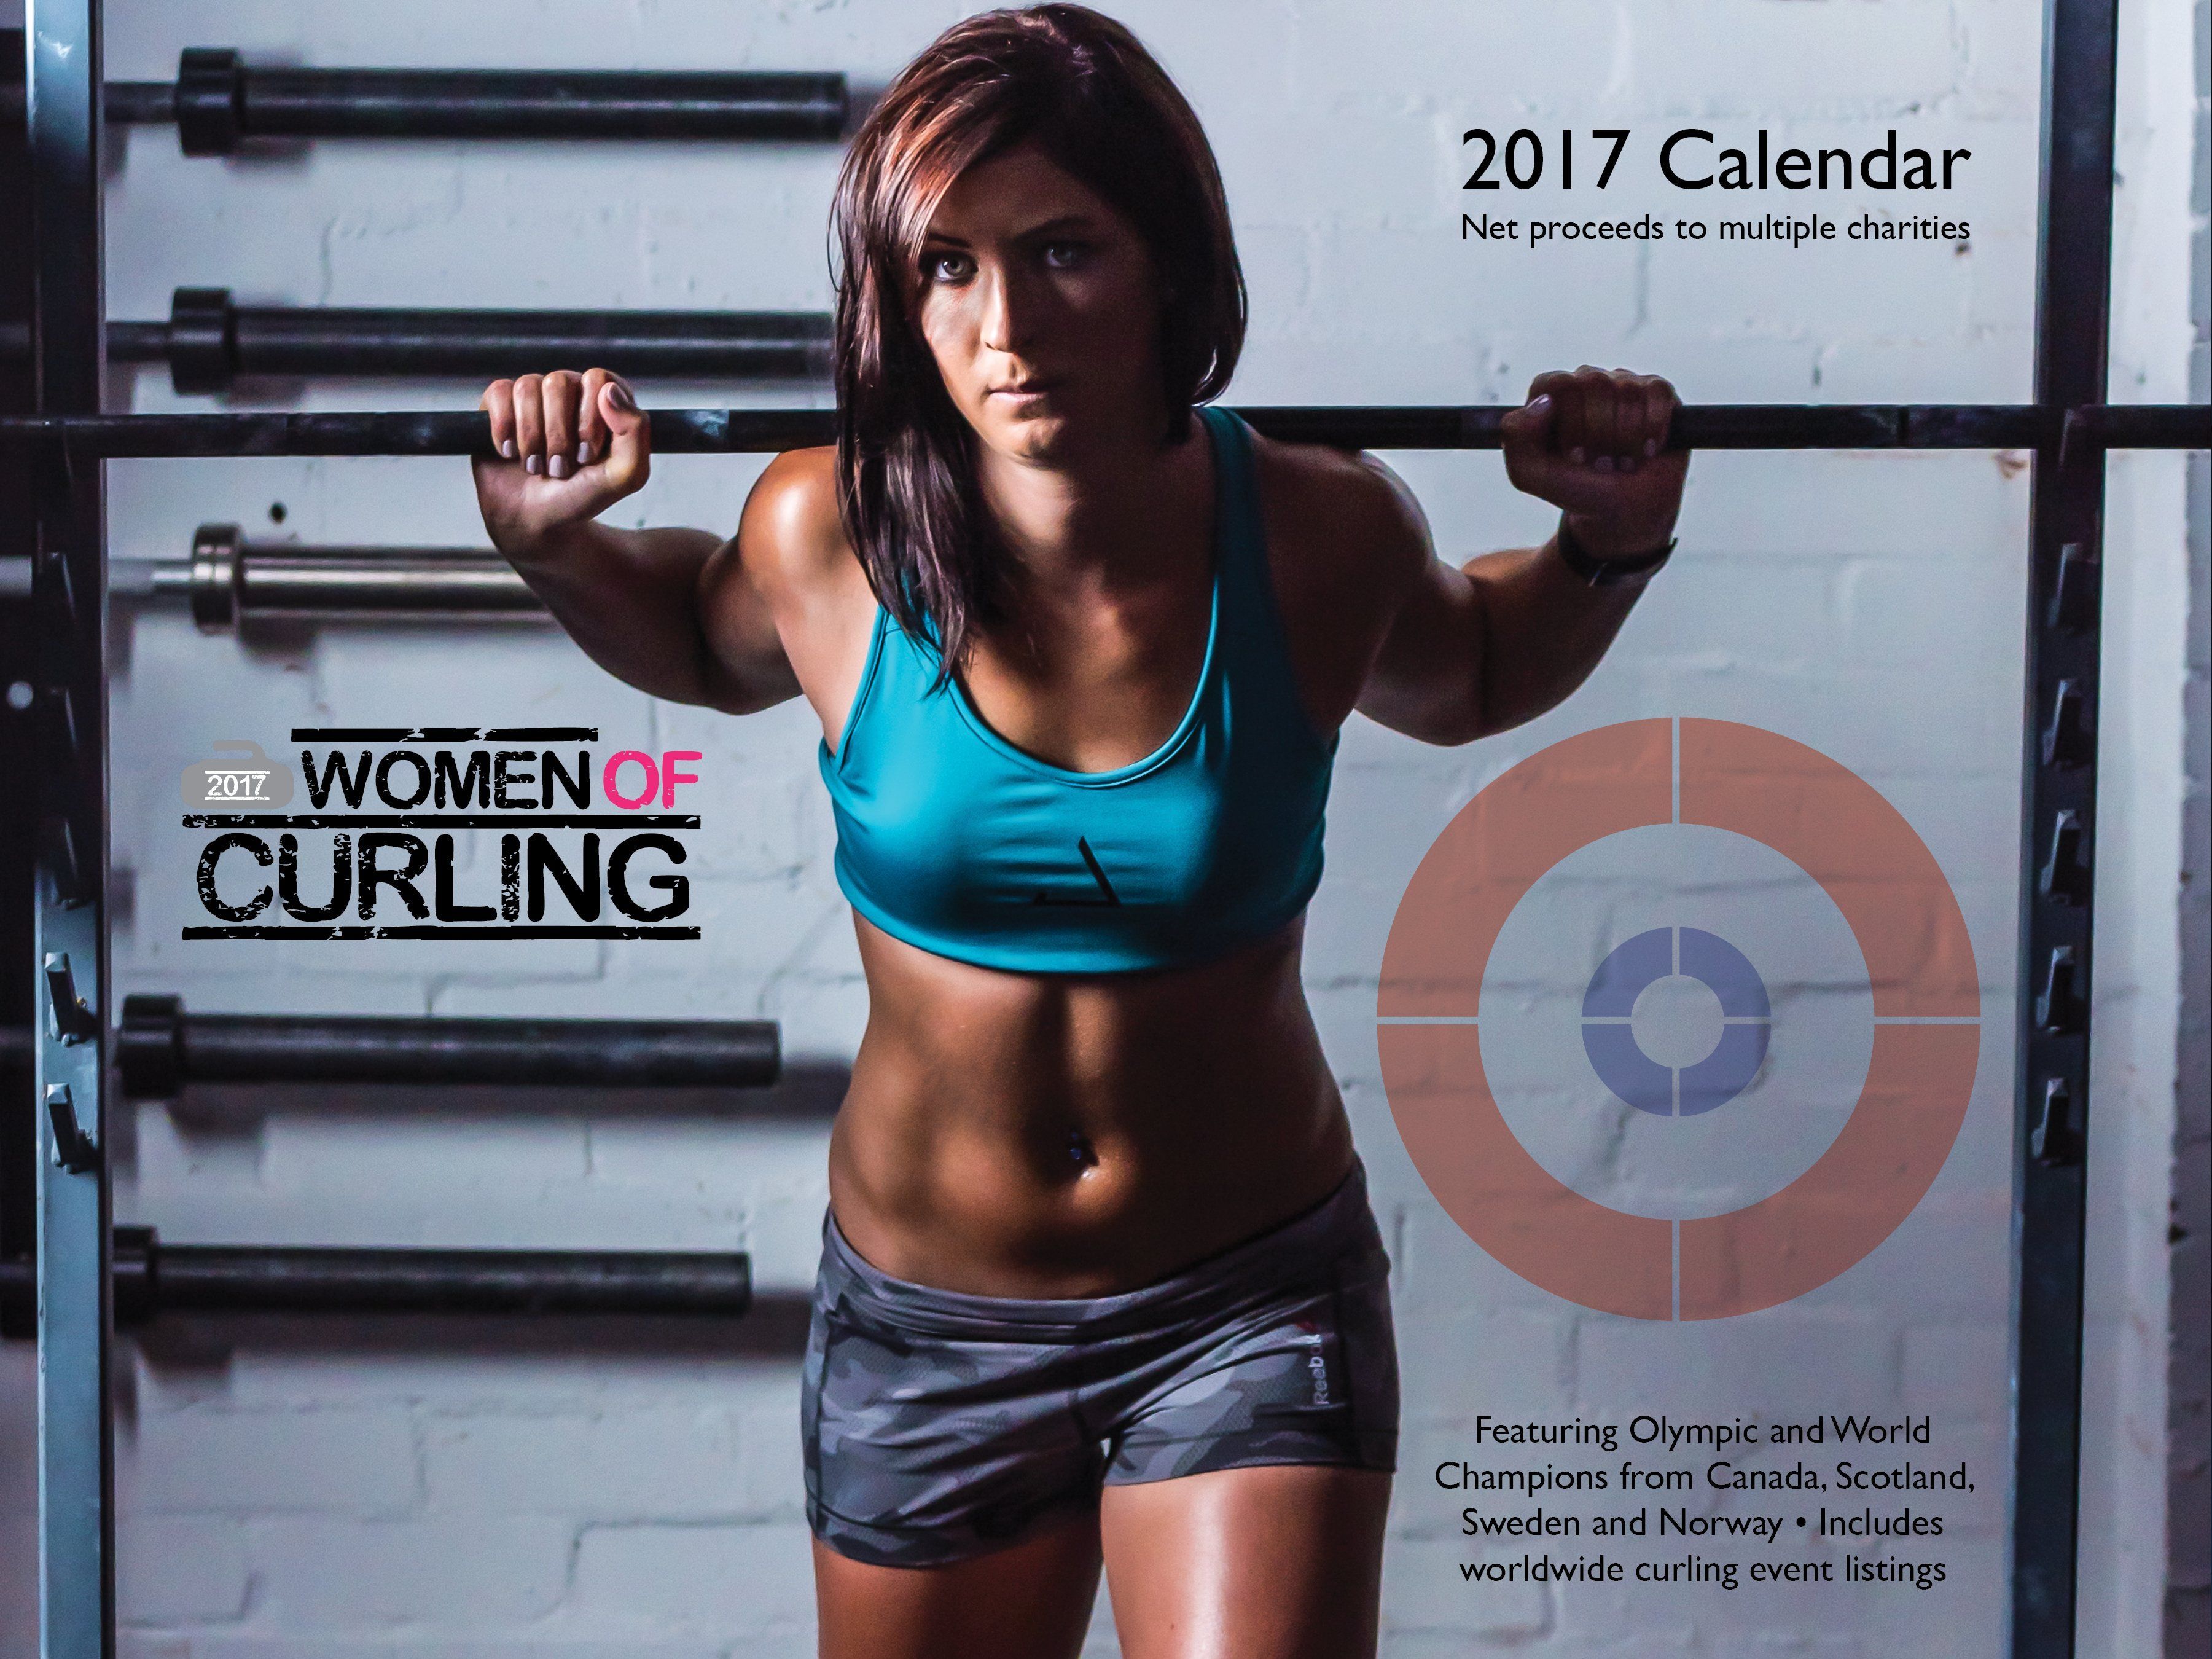 Gorgeous women of curling calendar